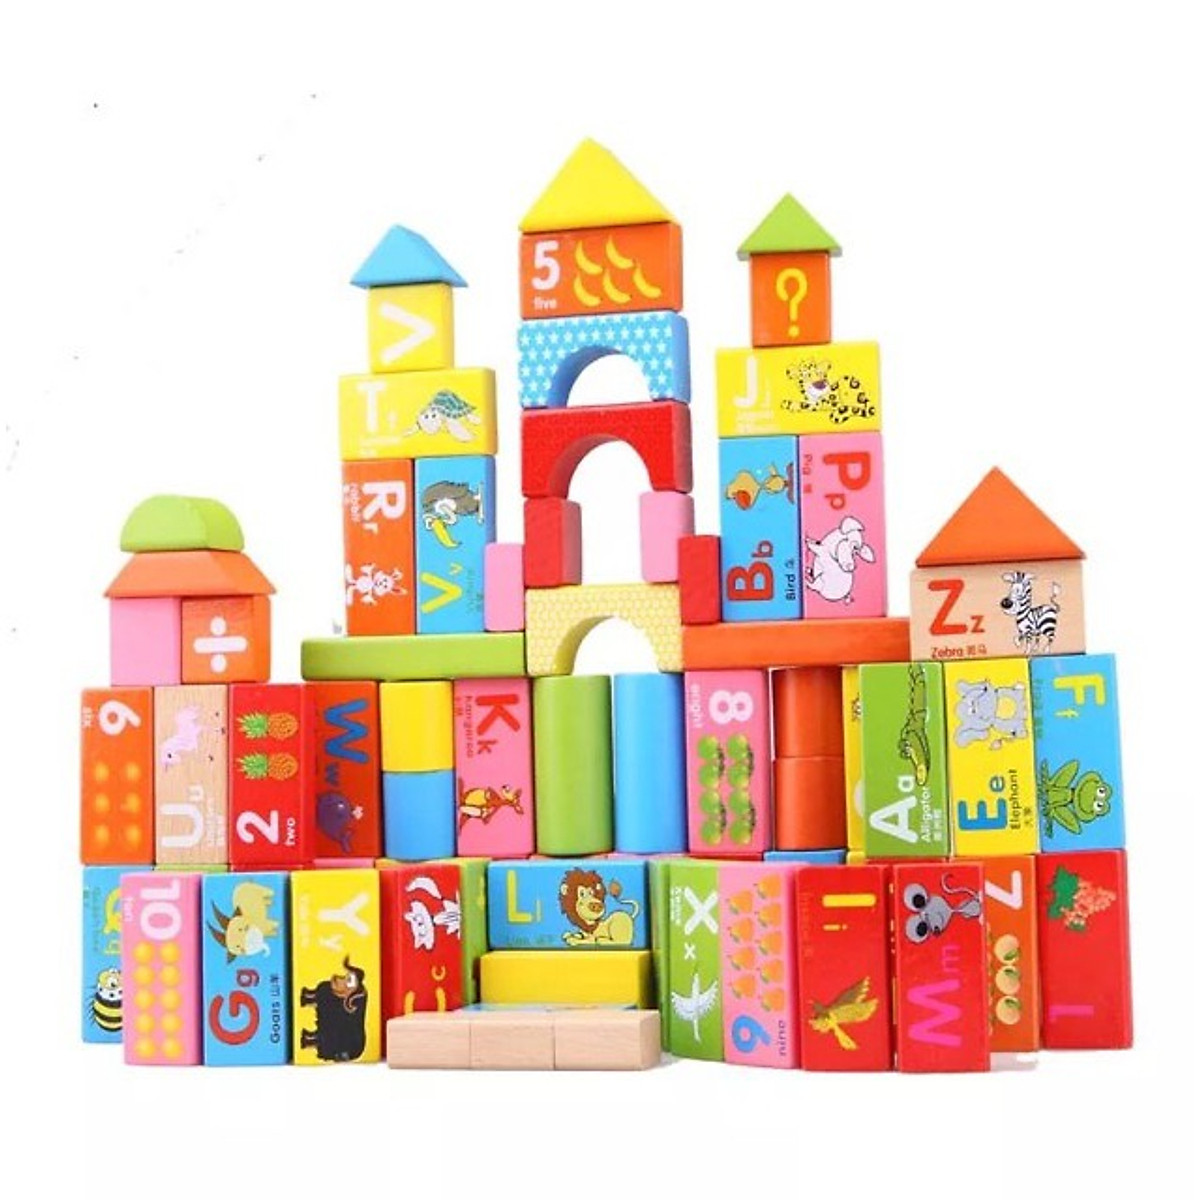 Bộ đồ chơi bằng gỗ cho trẻ em có 100 miếng ghép gỗ với nhiều dạng hình khối khác nhau